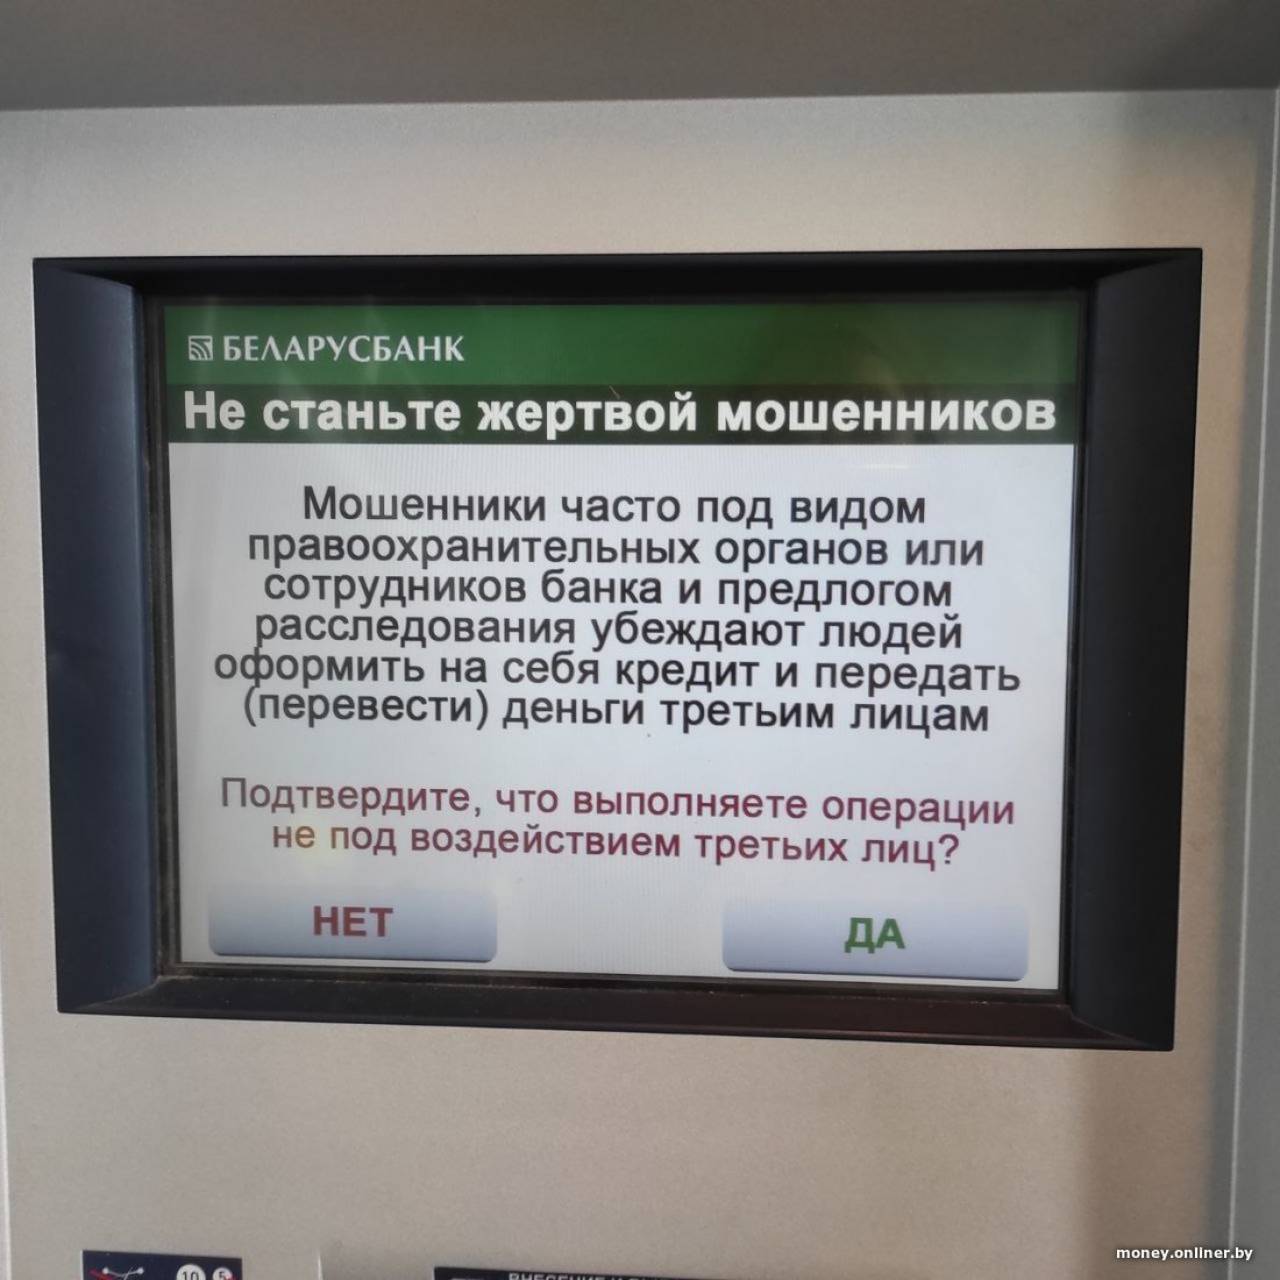 Можно ли в Беларуси не выплачивать банку деньги, которые взяты под давлением мошенников?